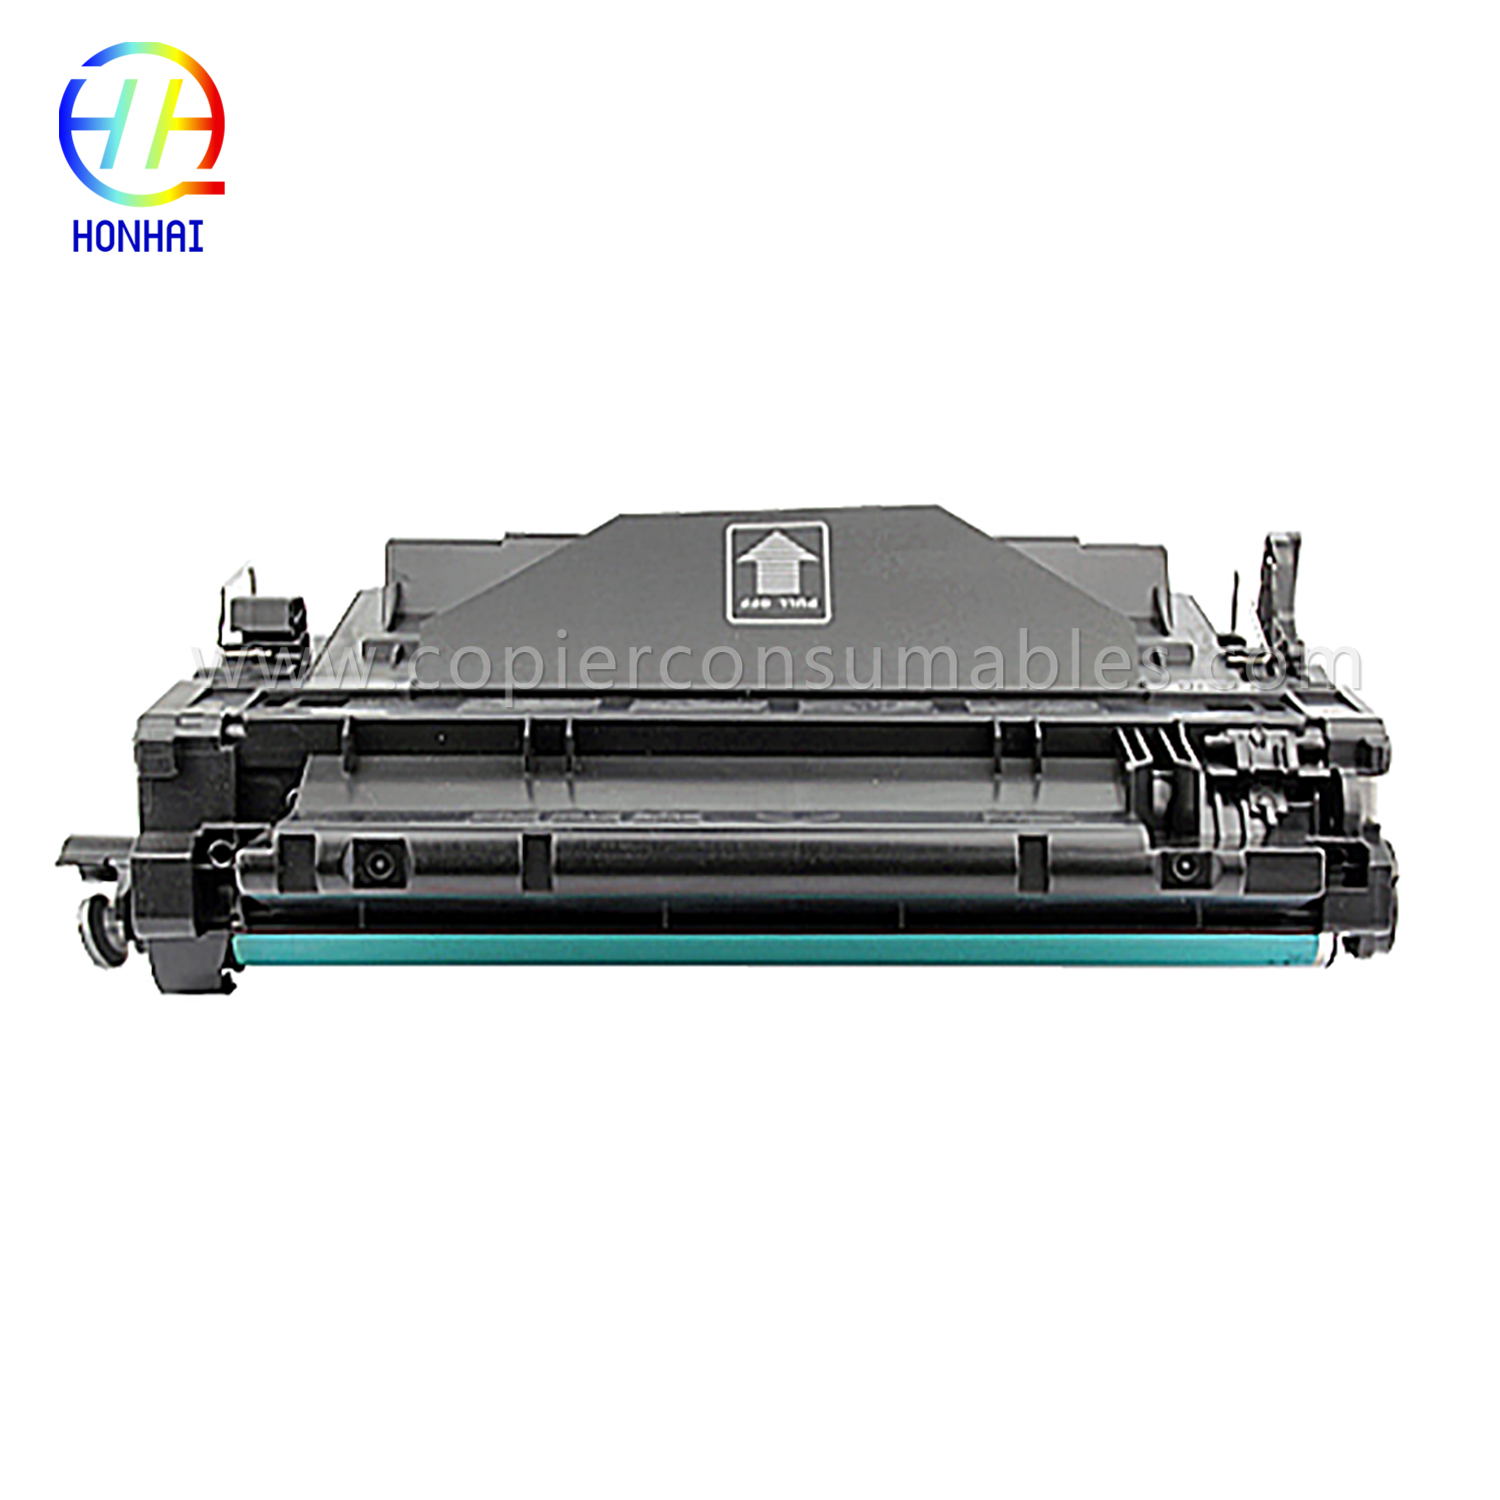 Cartouches de toner couleur HP LaserJet LaserJet Pro MFP M521dn Enterprise P3015 (CE255X) -1 (1) Couleur